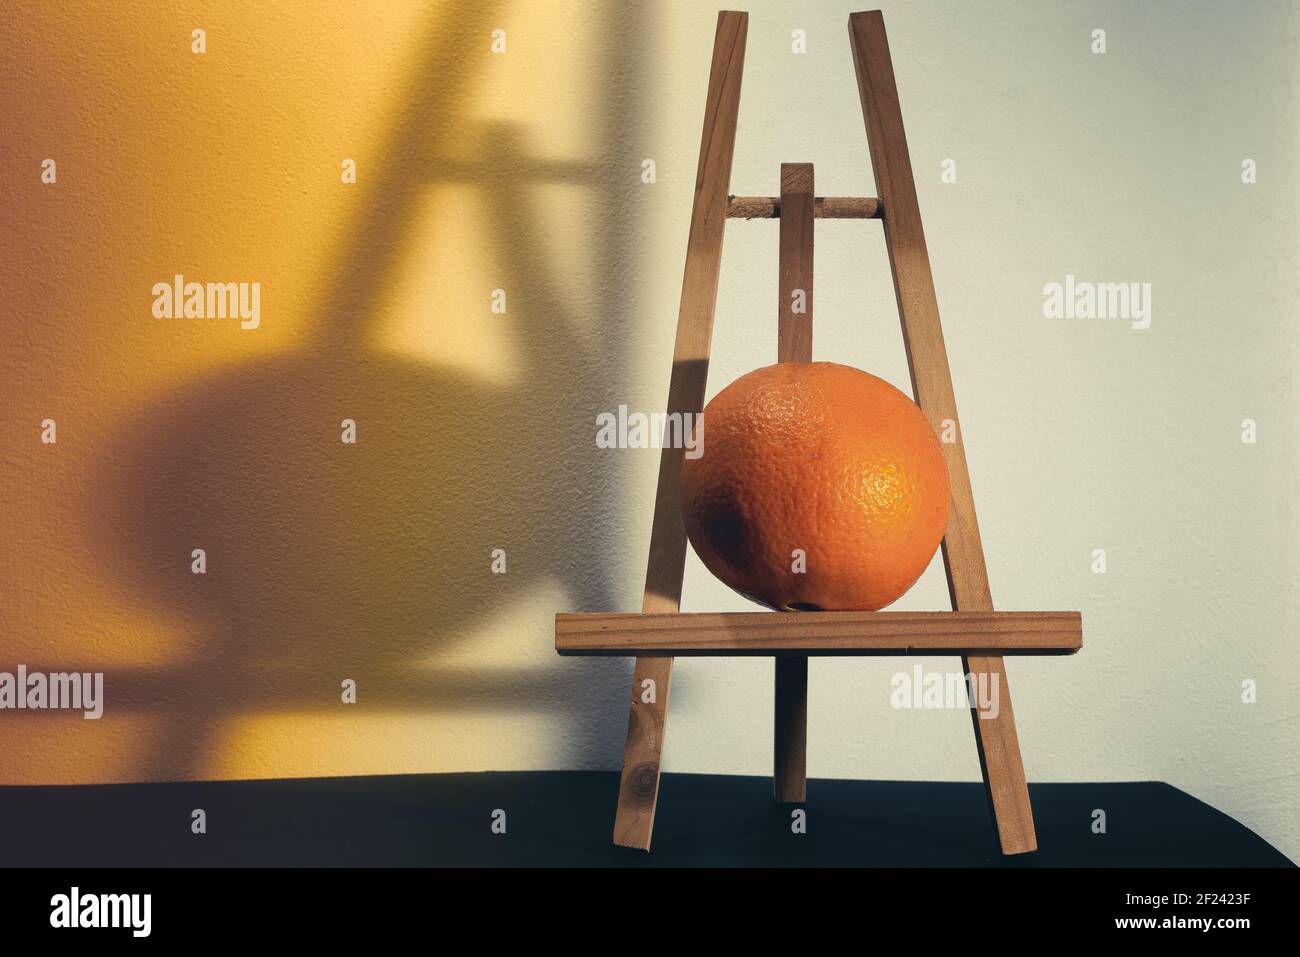 Retrato de una naranja en una caballete. Concepto de vida quieto moderna. Foto de stock